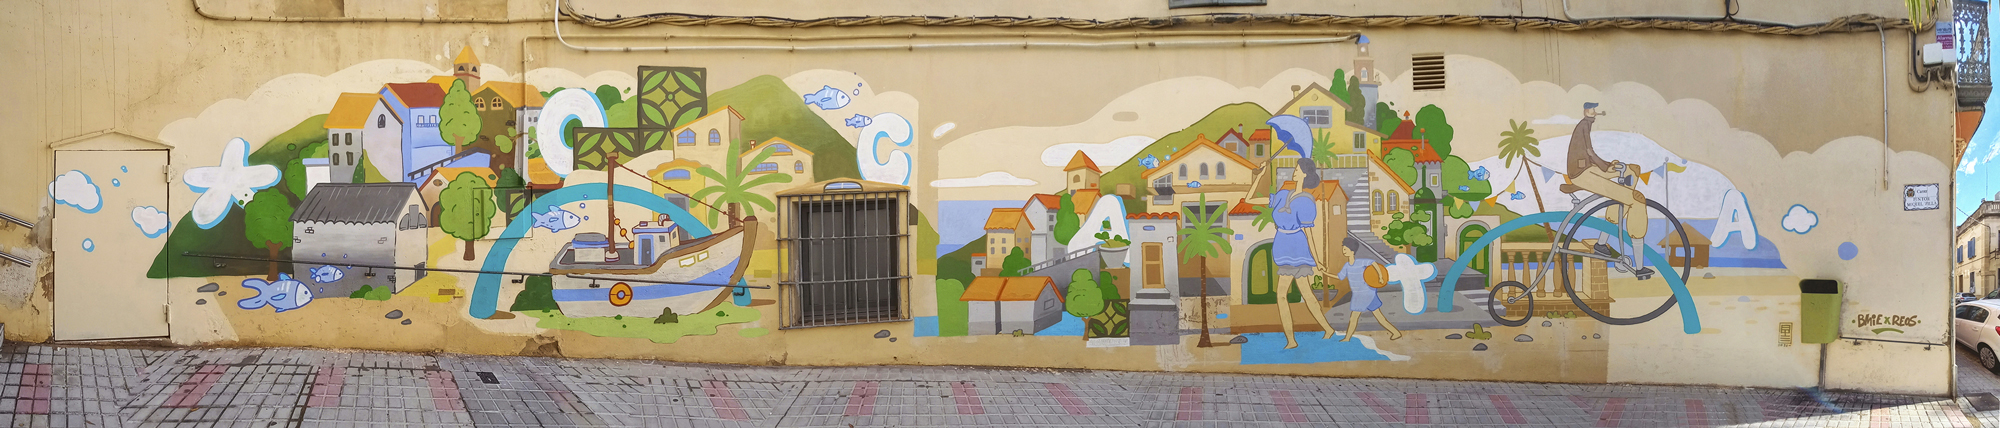 arte urbano bemie reos Ocata